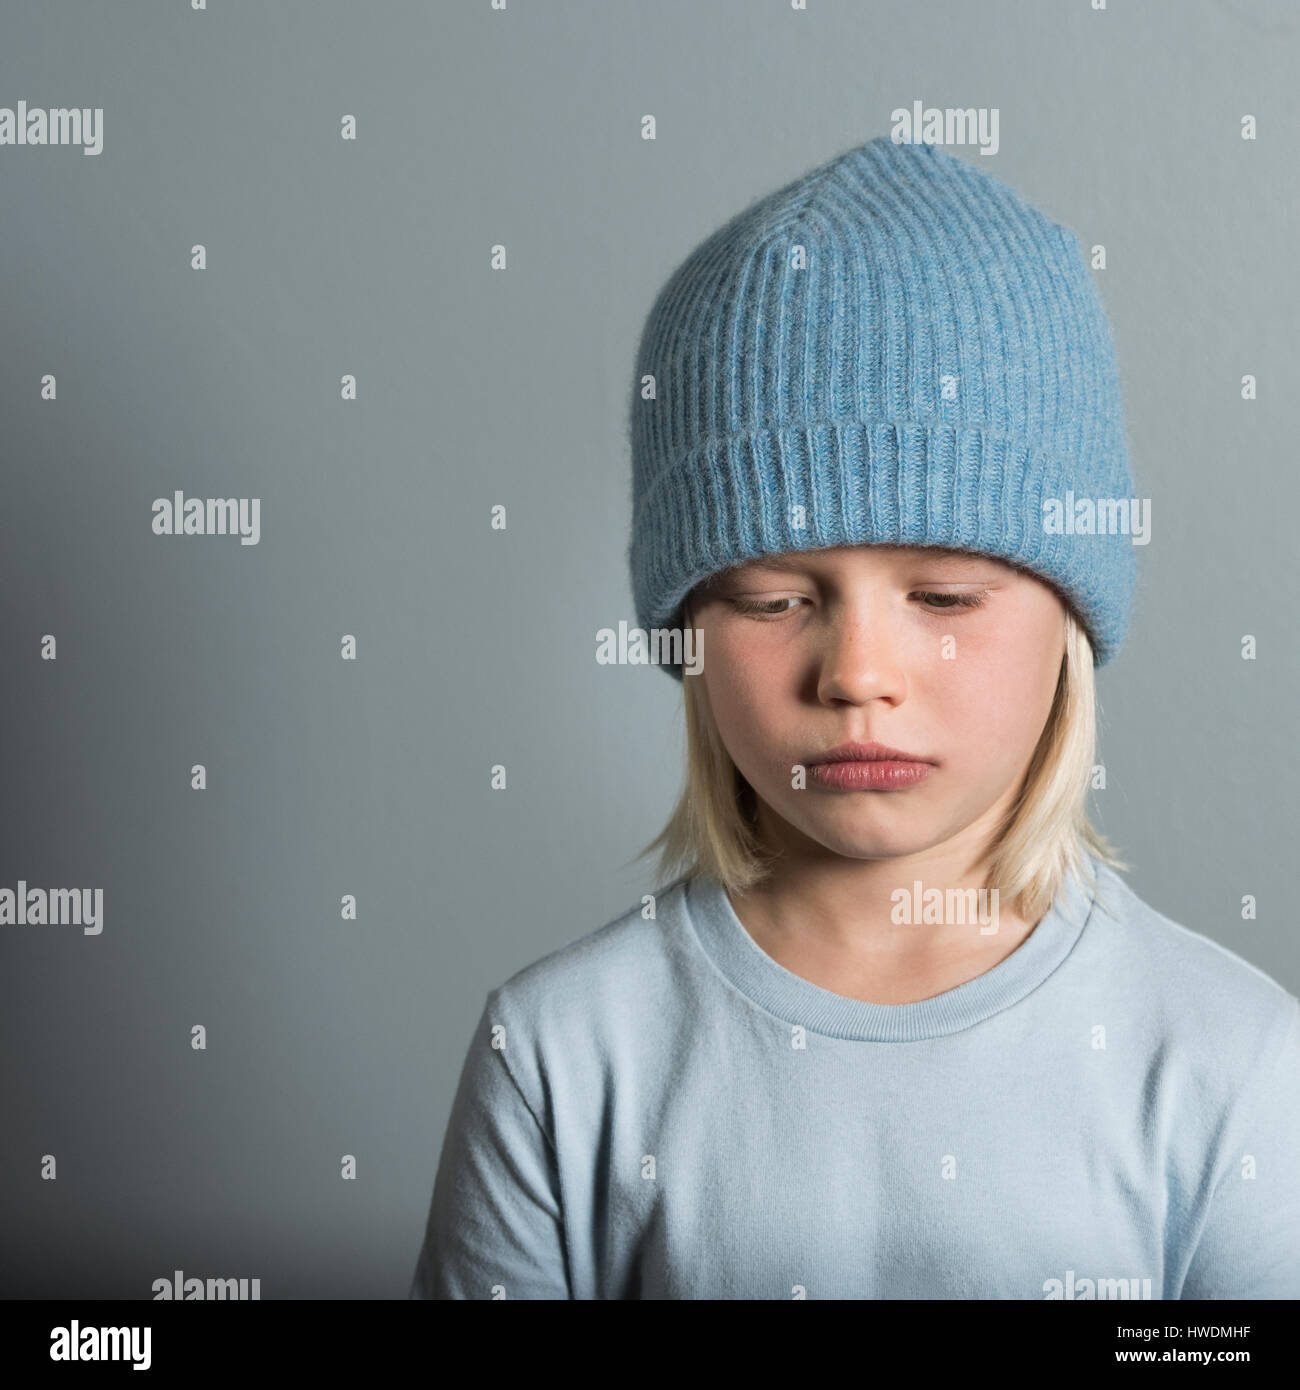 Portrait of boy wearing wool hat looking sad Stock Photo